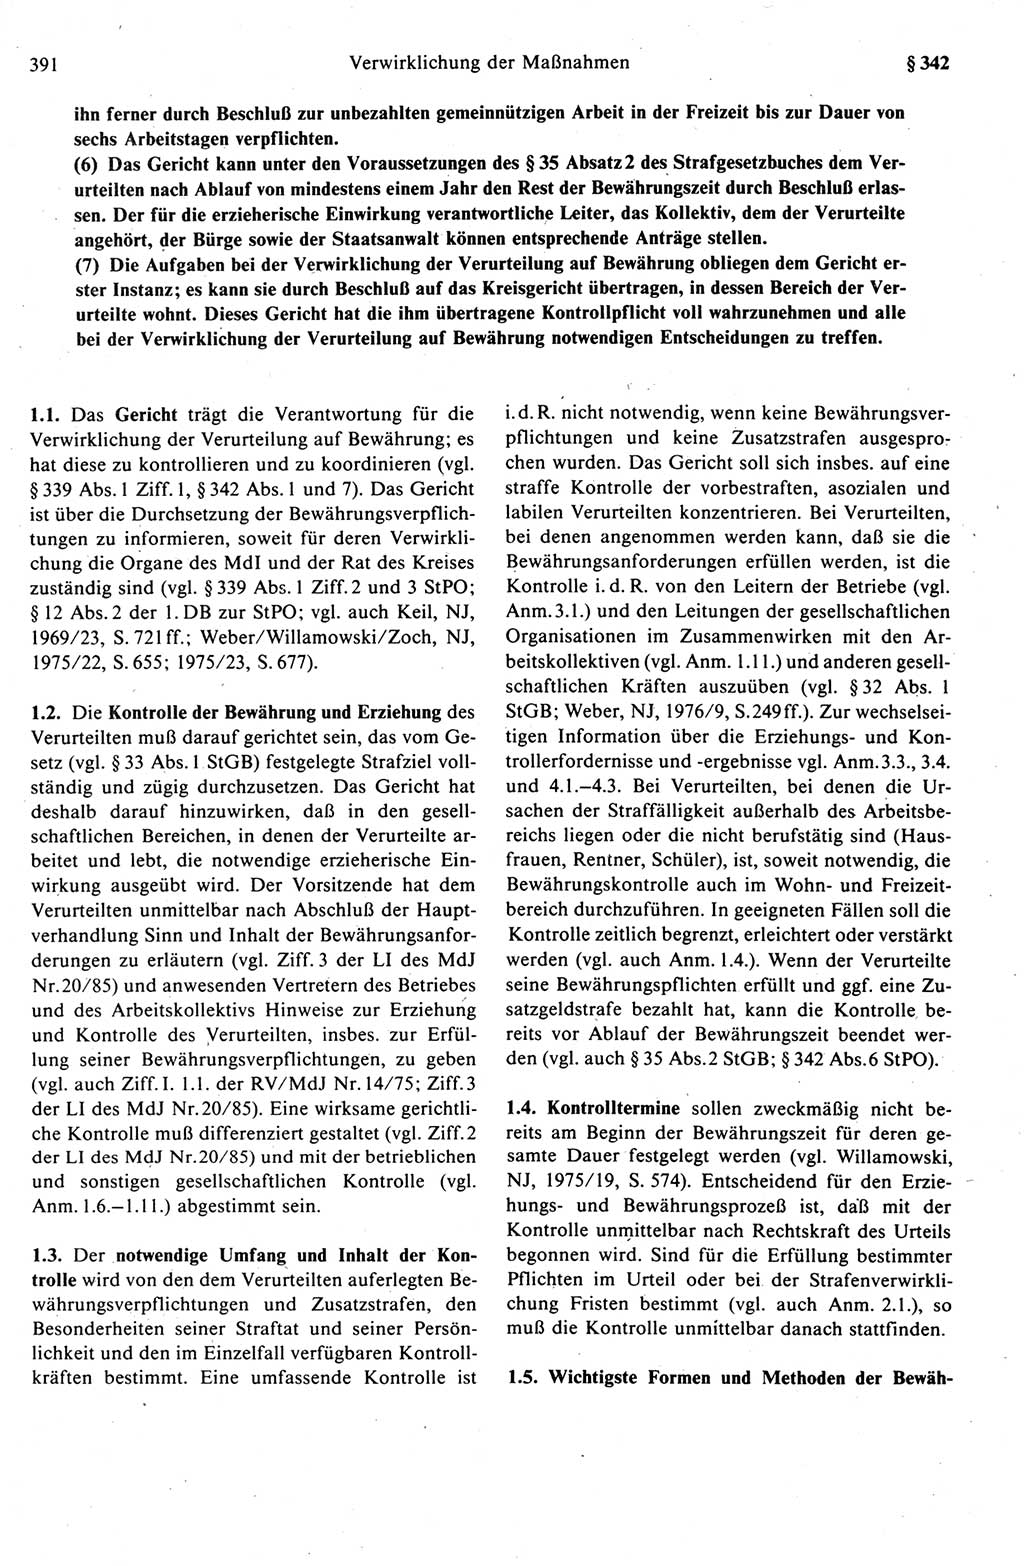 Strafprozeßrecht der DDR (Deutsche Demokratische Republik), Kommentar zur Strafprozeßordnung (StPO) 1989, Seite 391 (Strafprozeßr. DDR Komm. StPO 1989, S. 391)